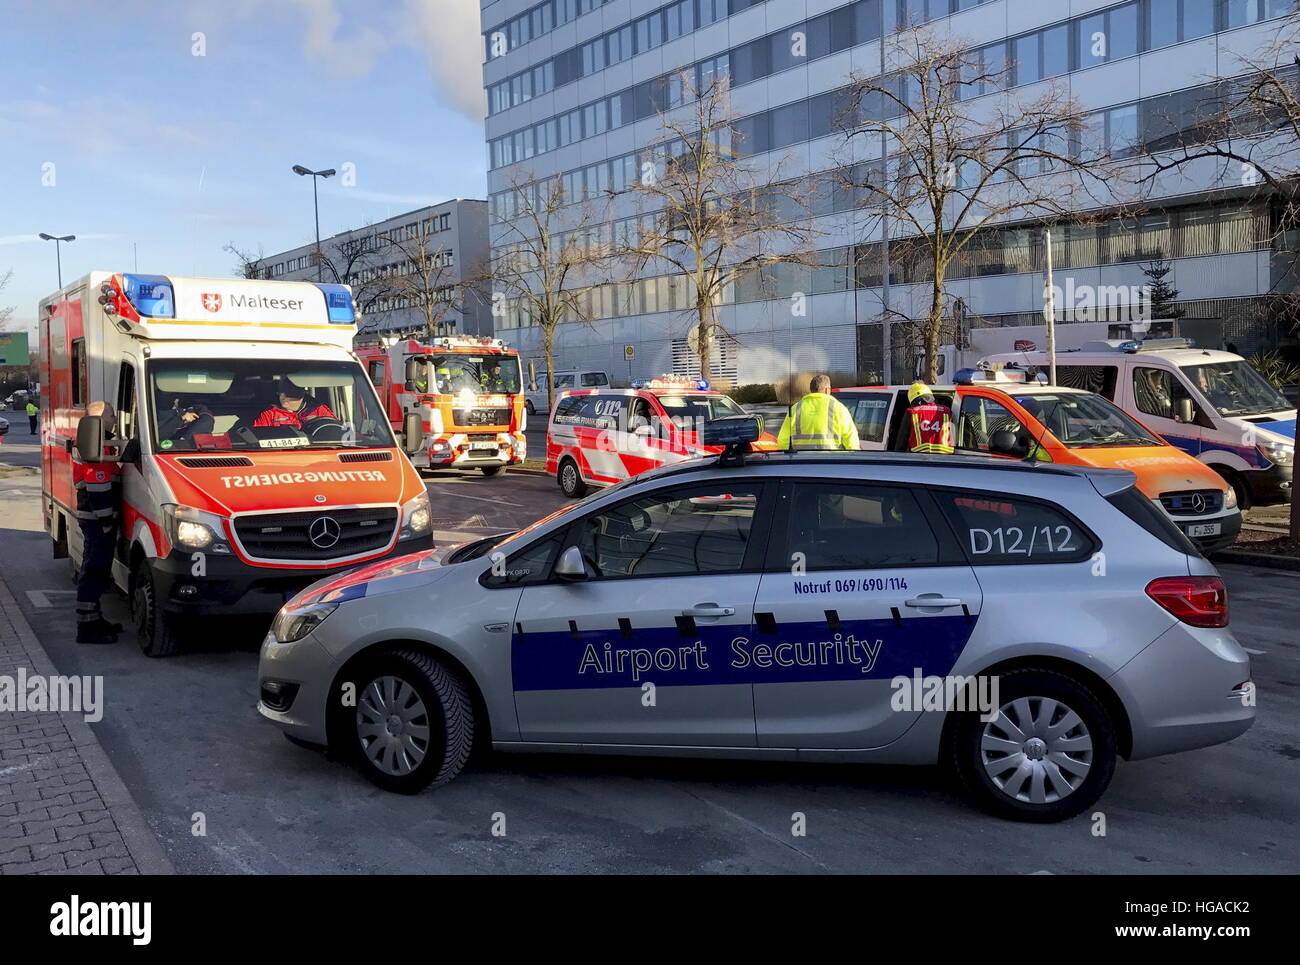 dpatopbilder - Rettungsfahrzeuge stehen am 06.01.20 vor Tor 3 am Terminal 1 des Frankfurter Flughafens. Zuvor war ein mit 75 Menschen besetzter Bus mit einem anderen Fahrzeug auf dem Vorfeld zusammengestoßen. Die beiden Fahrer und ein Passagier werden schwer verletzt.   (zu dpa «Busunfall auf Frankfurter Flughafen - Rund 15 Verletzte» vom 06.01.2017) Foto: Jürgen Mahnke/dpa +++(c) dpa - Bildfunk+++ Stock Photo